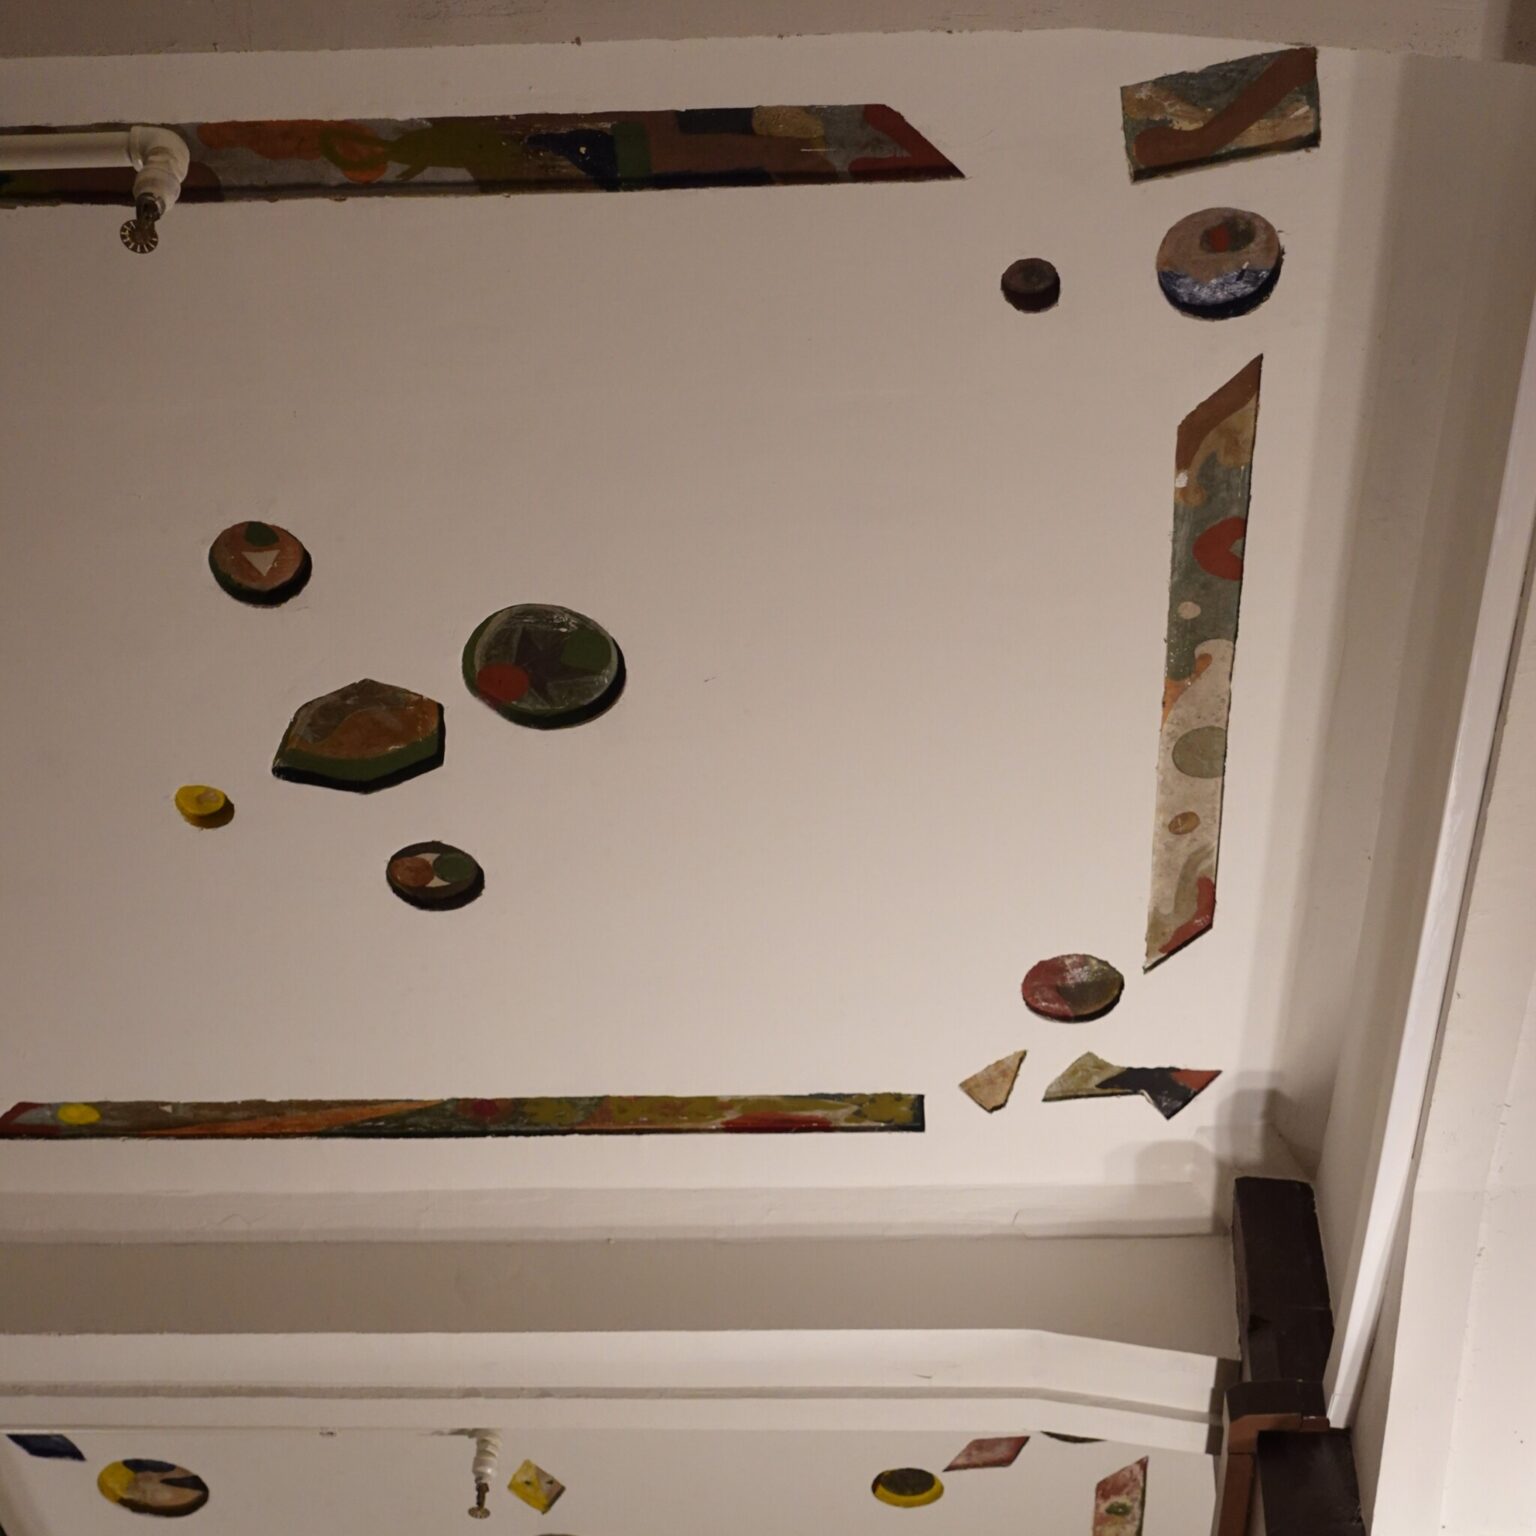 ビリヤードを彷彿とさせる天井のデザイン。